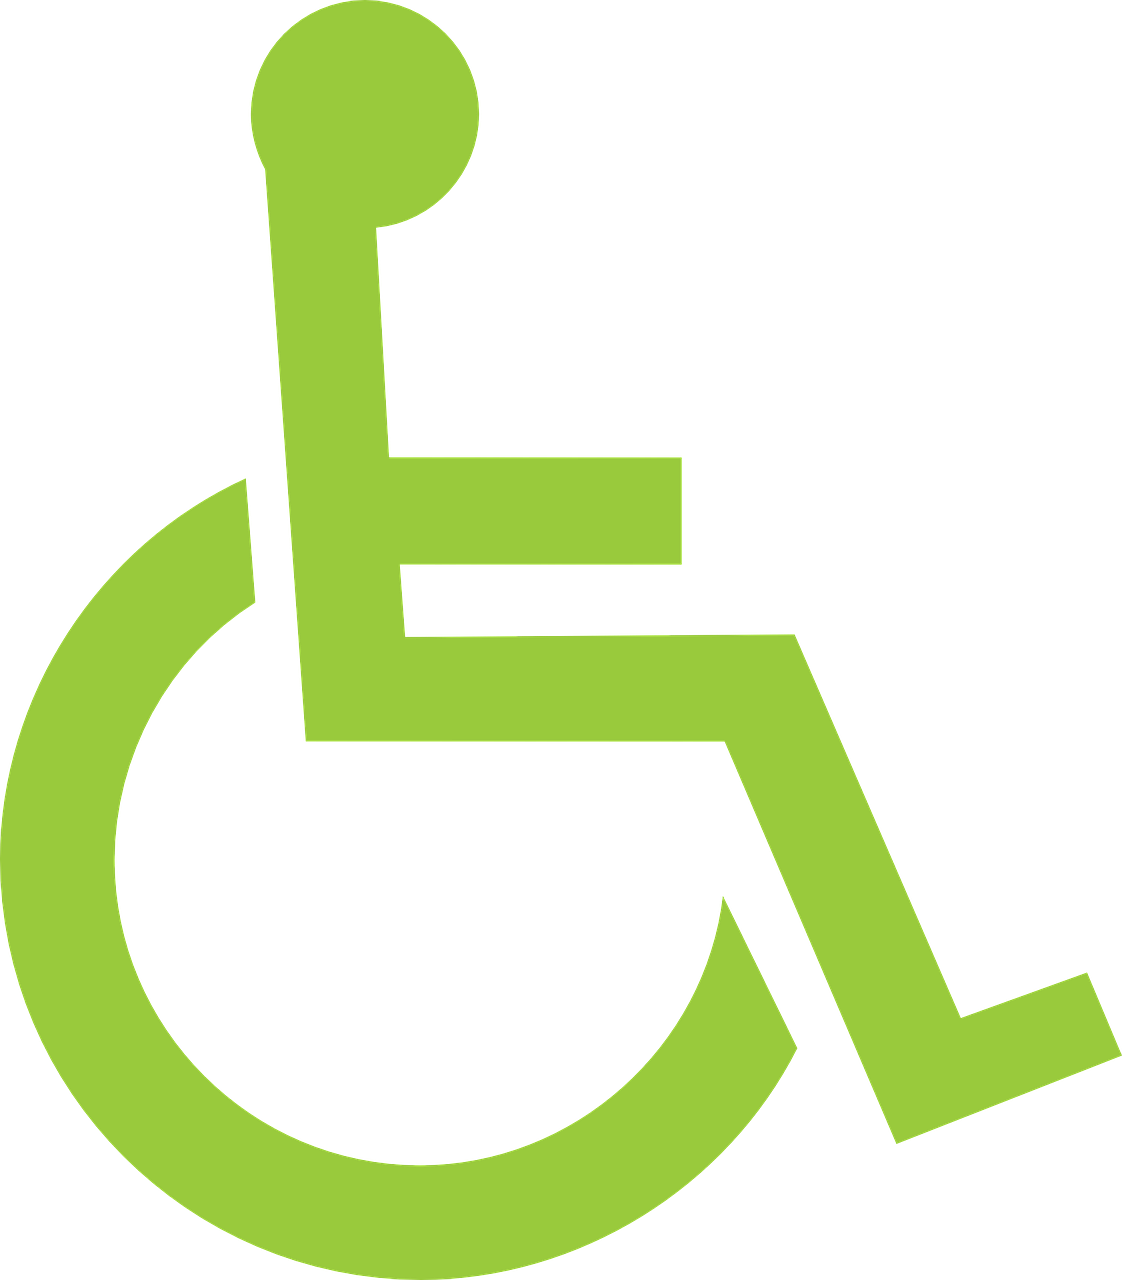 Jürgen Zorg instelling gehandicaptenzorg verstandelijk gehandicapten ervaringen